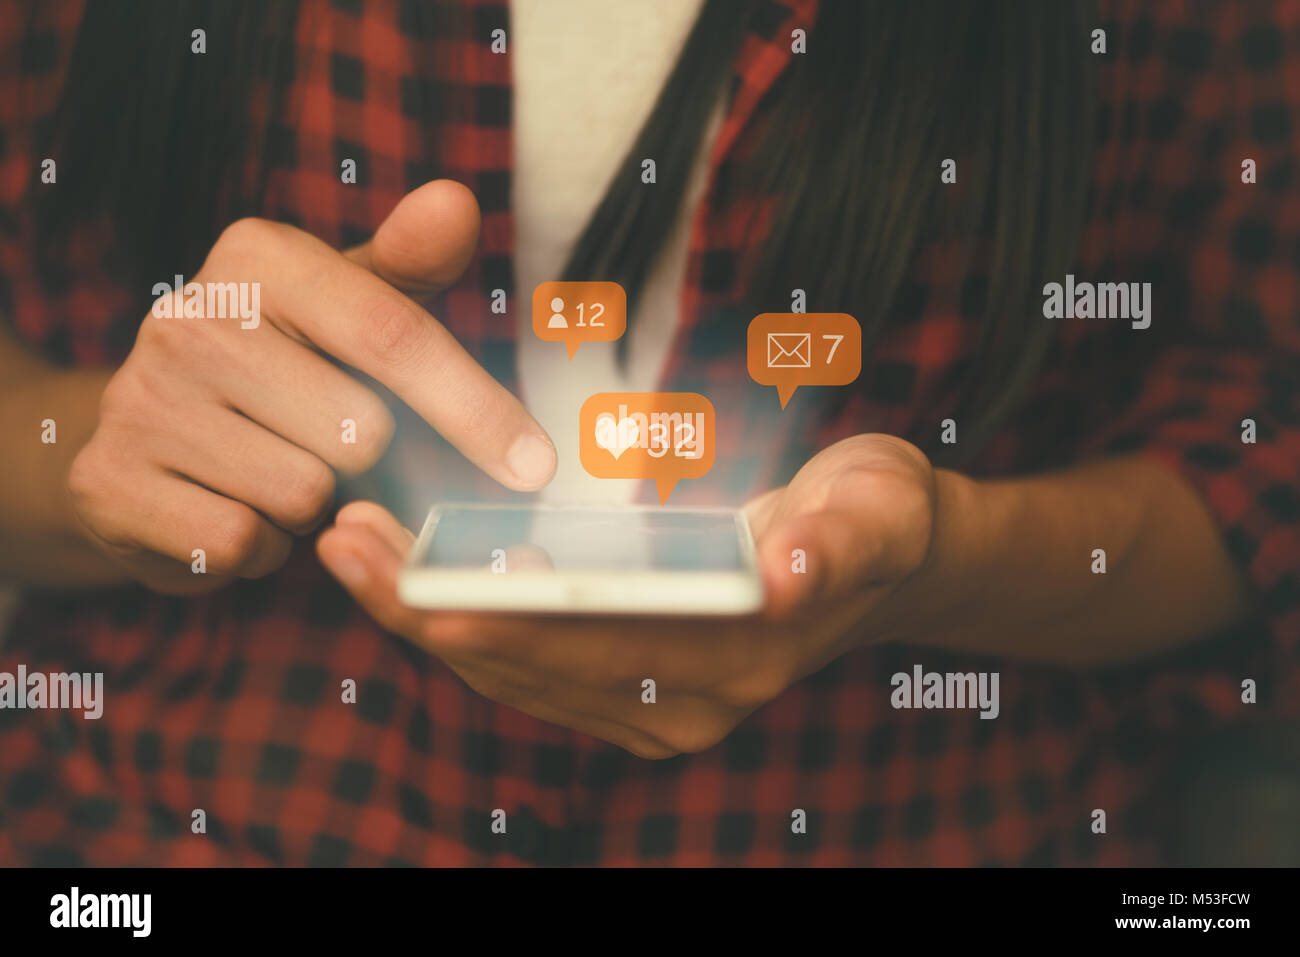 Social media, social network concept avec smart phone Banque D'Images